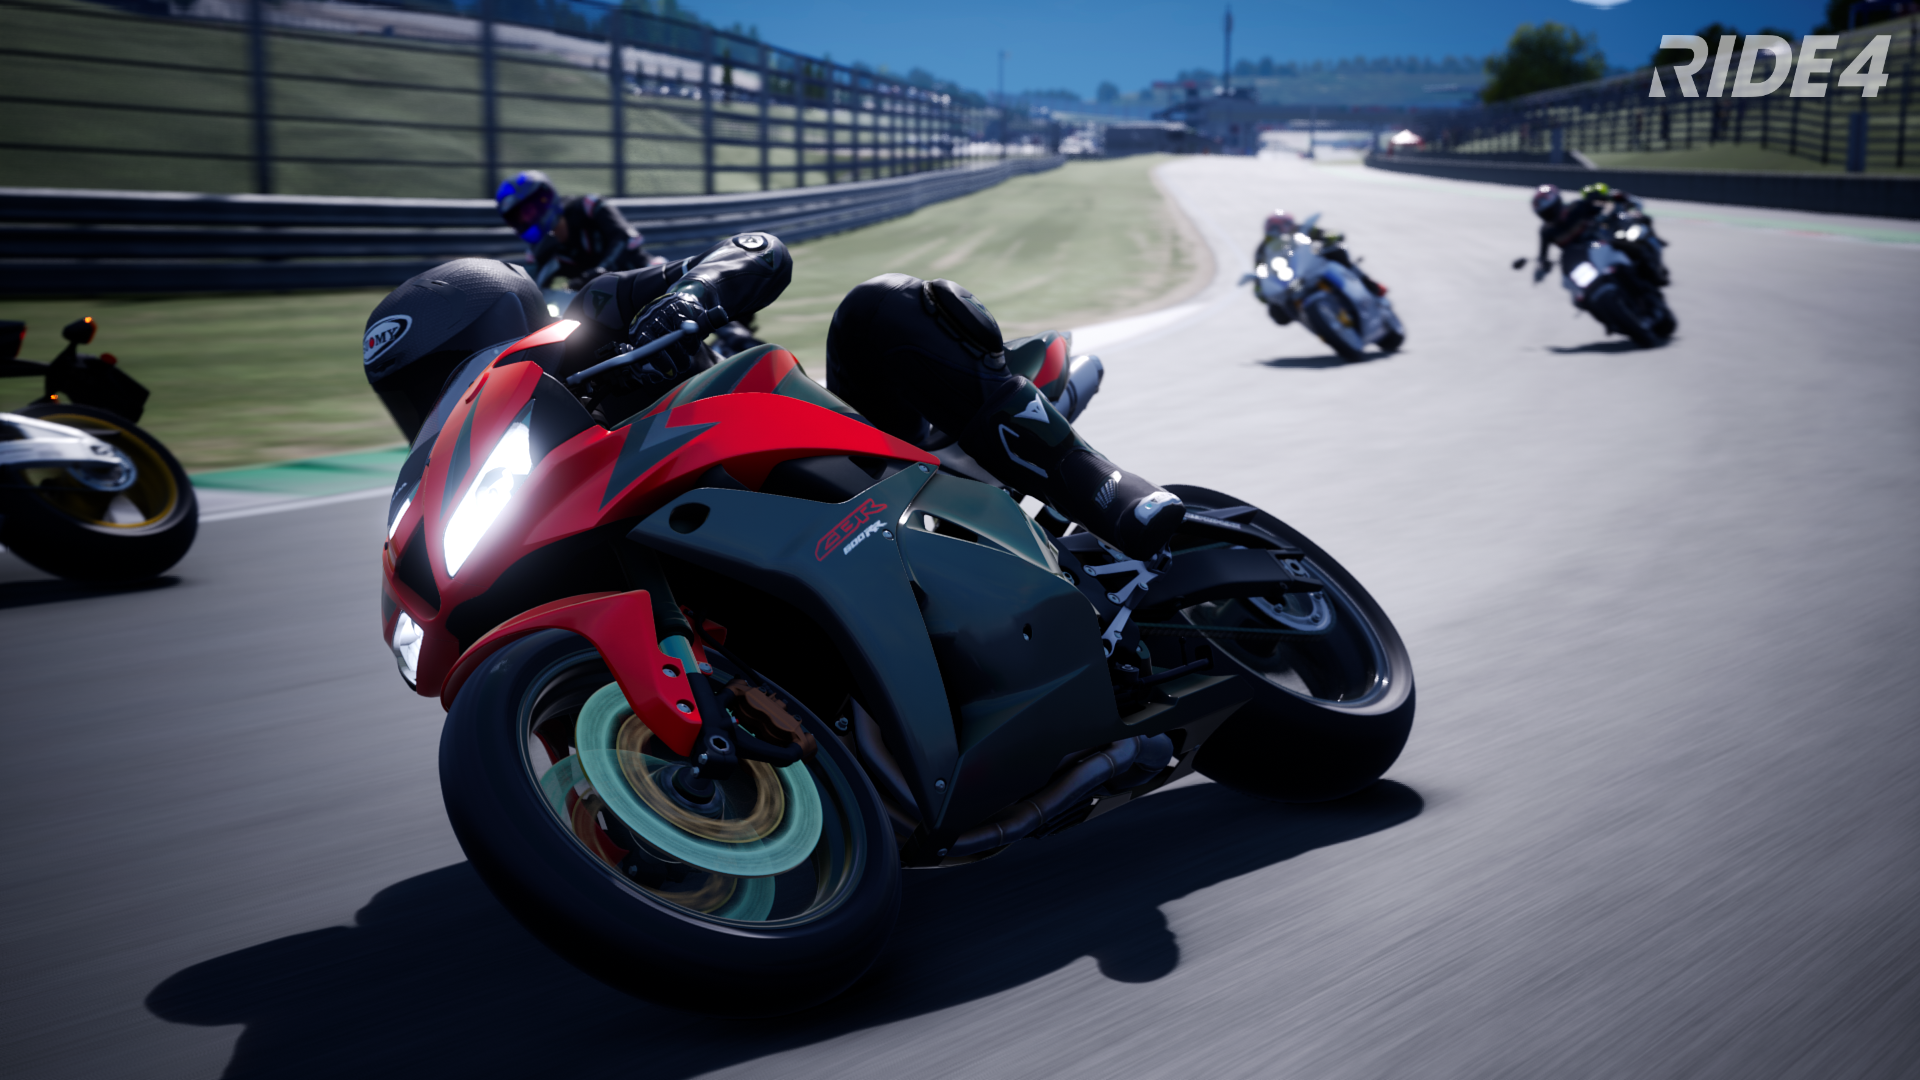 Motorsport Motorcycle Video Games Vehicle Headlights Race Tracks Helmet RiDE 4 Racing 1920x1080